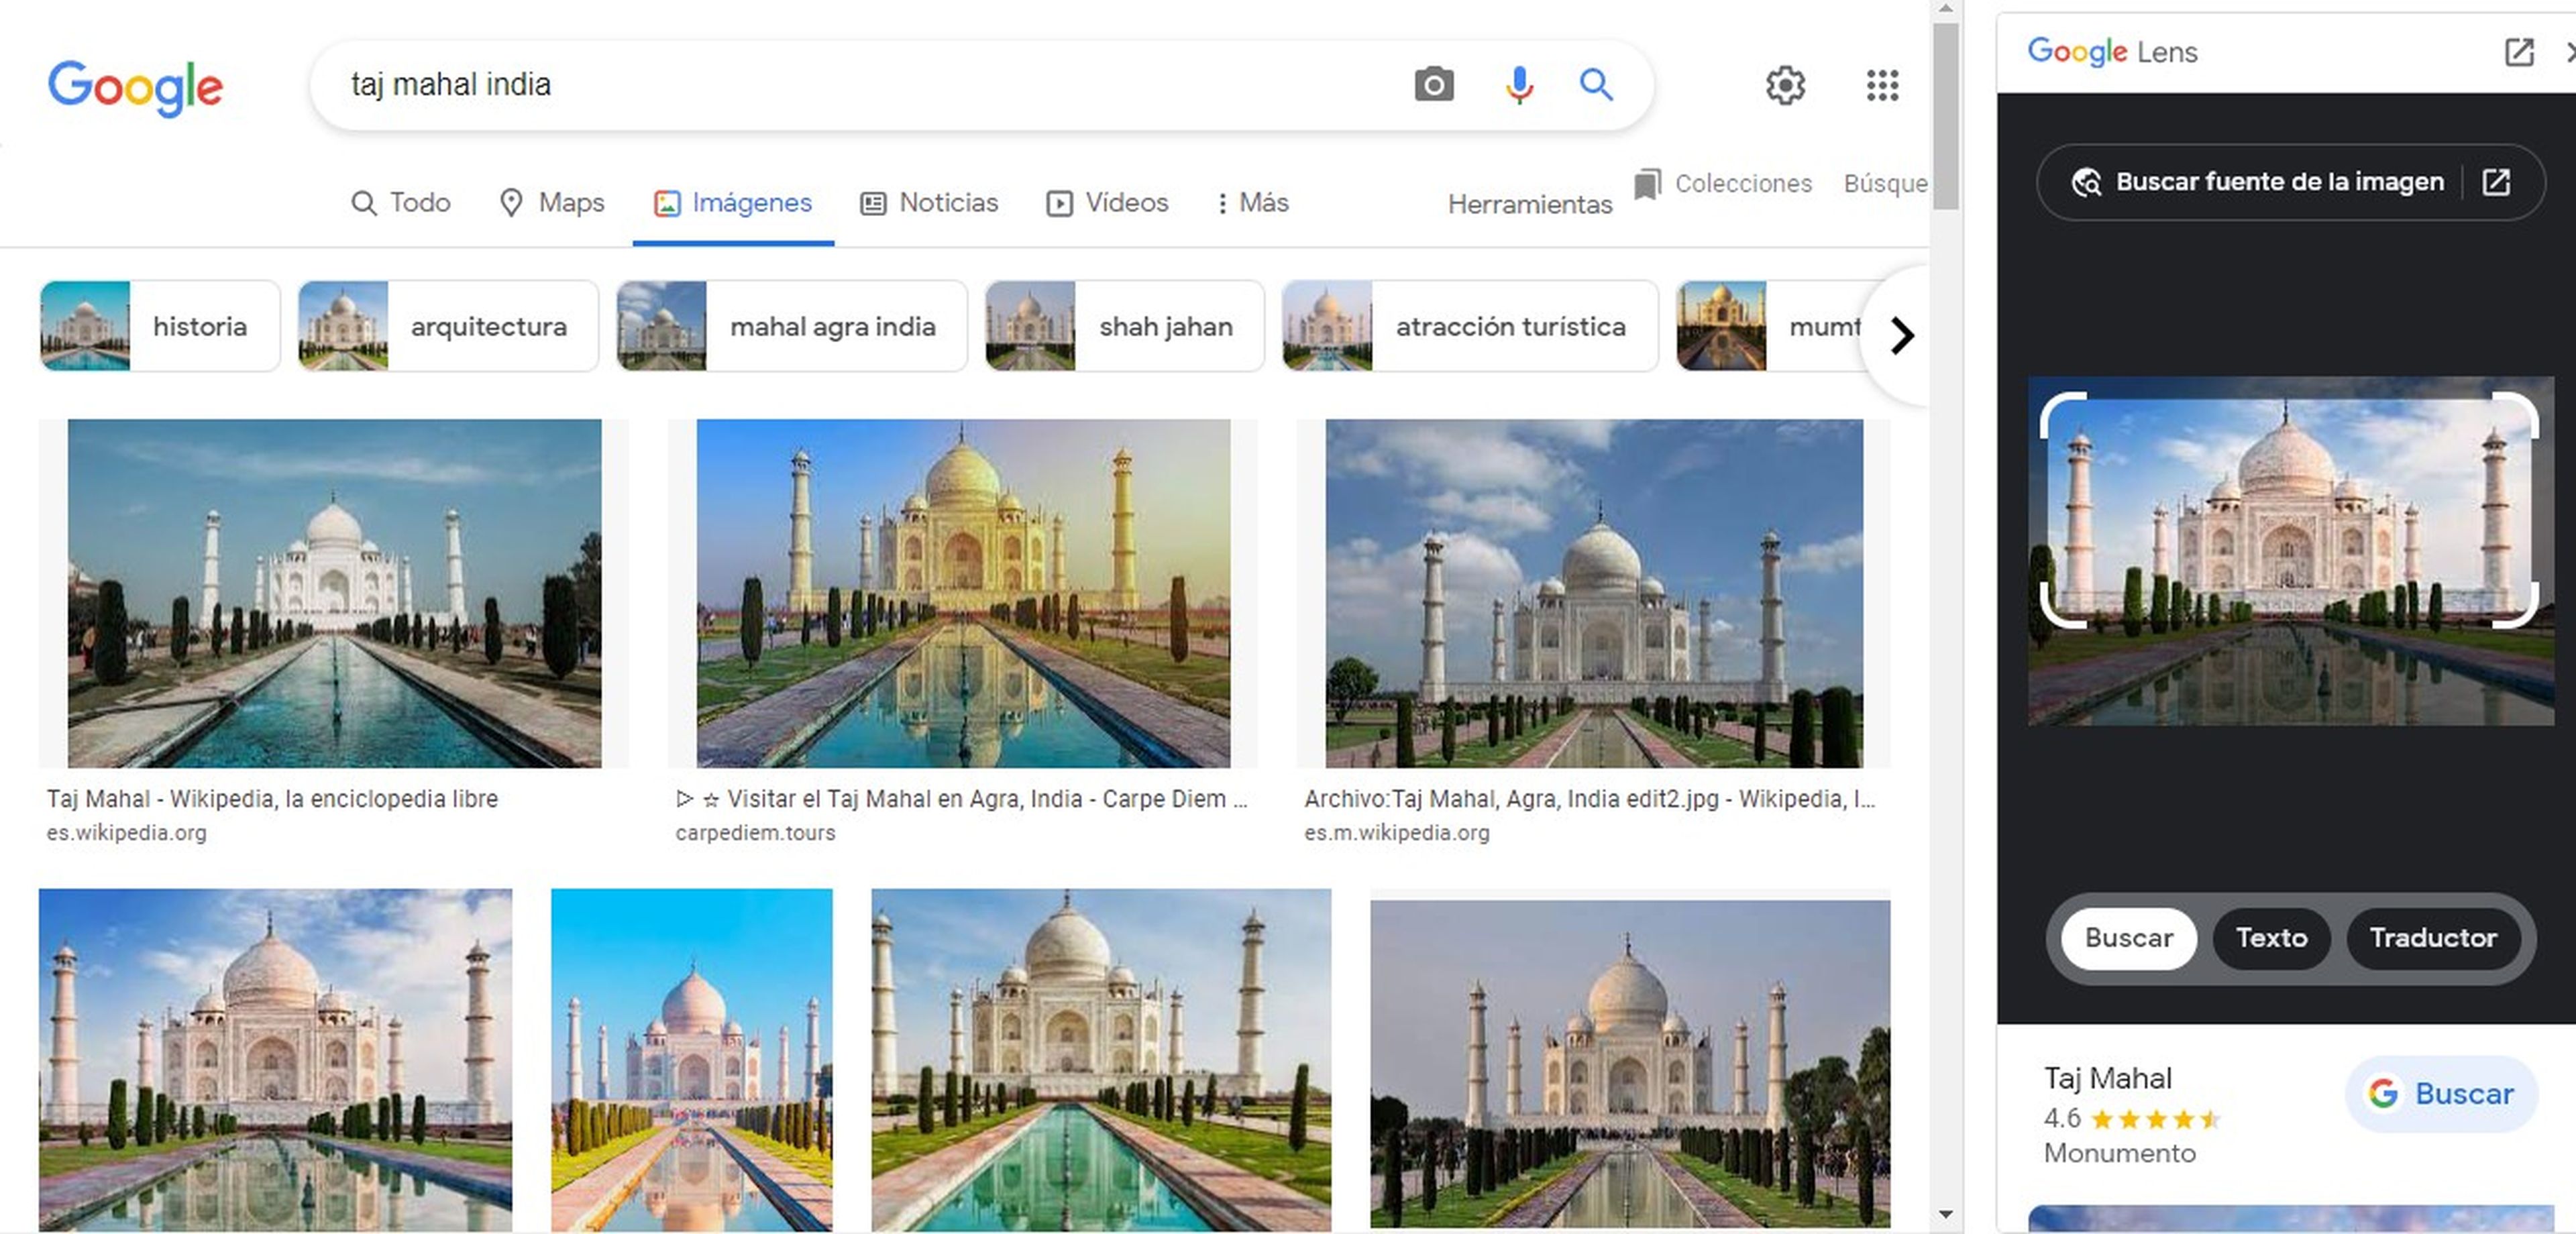 Esta es la nueva actualización de Google para su función de búsqueda por imagen, Google Lens